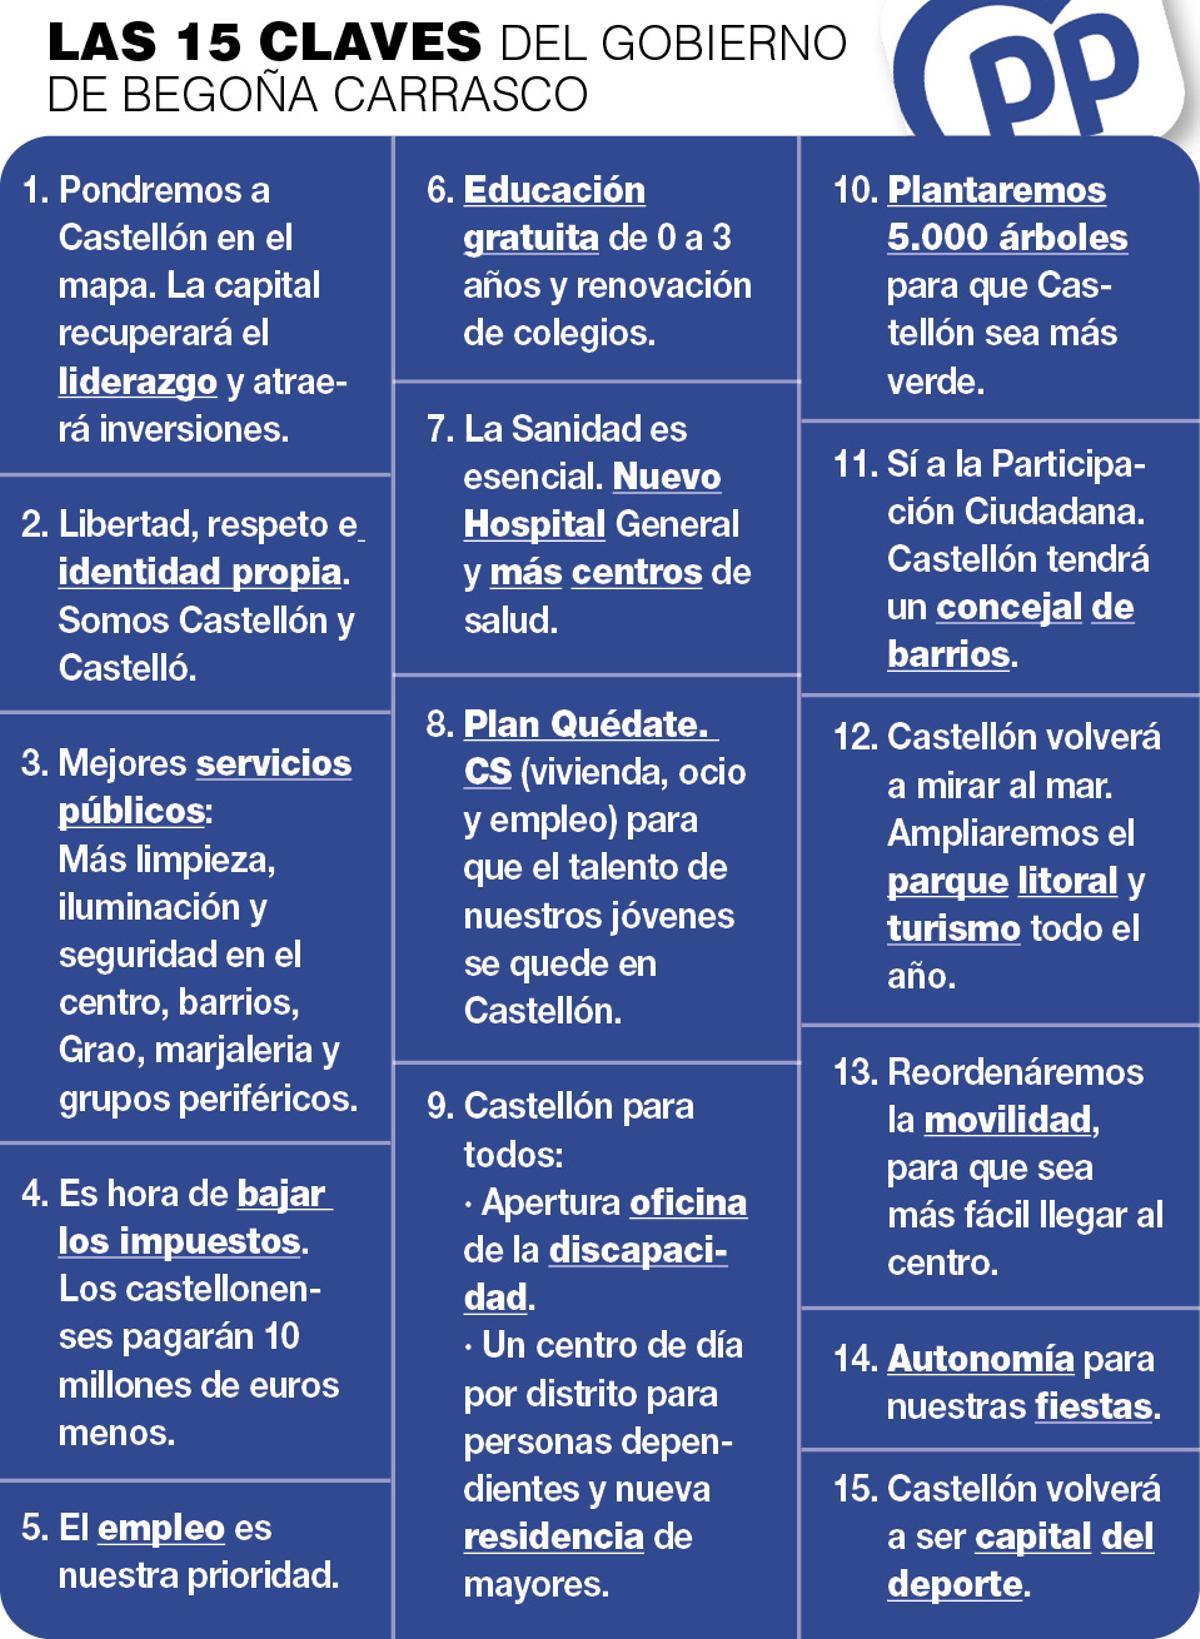 Las 15 claves del gobierno de Begoña Carrasco.